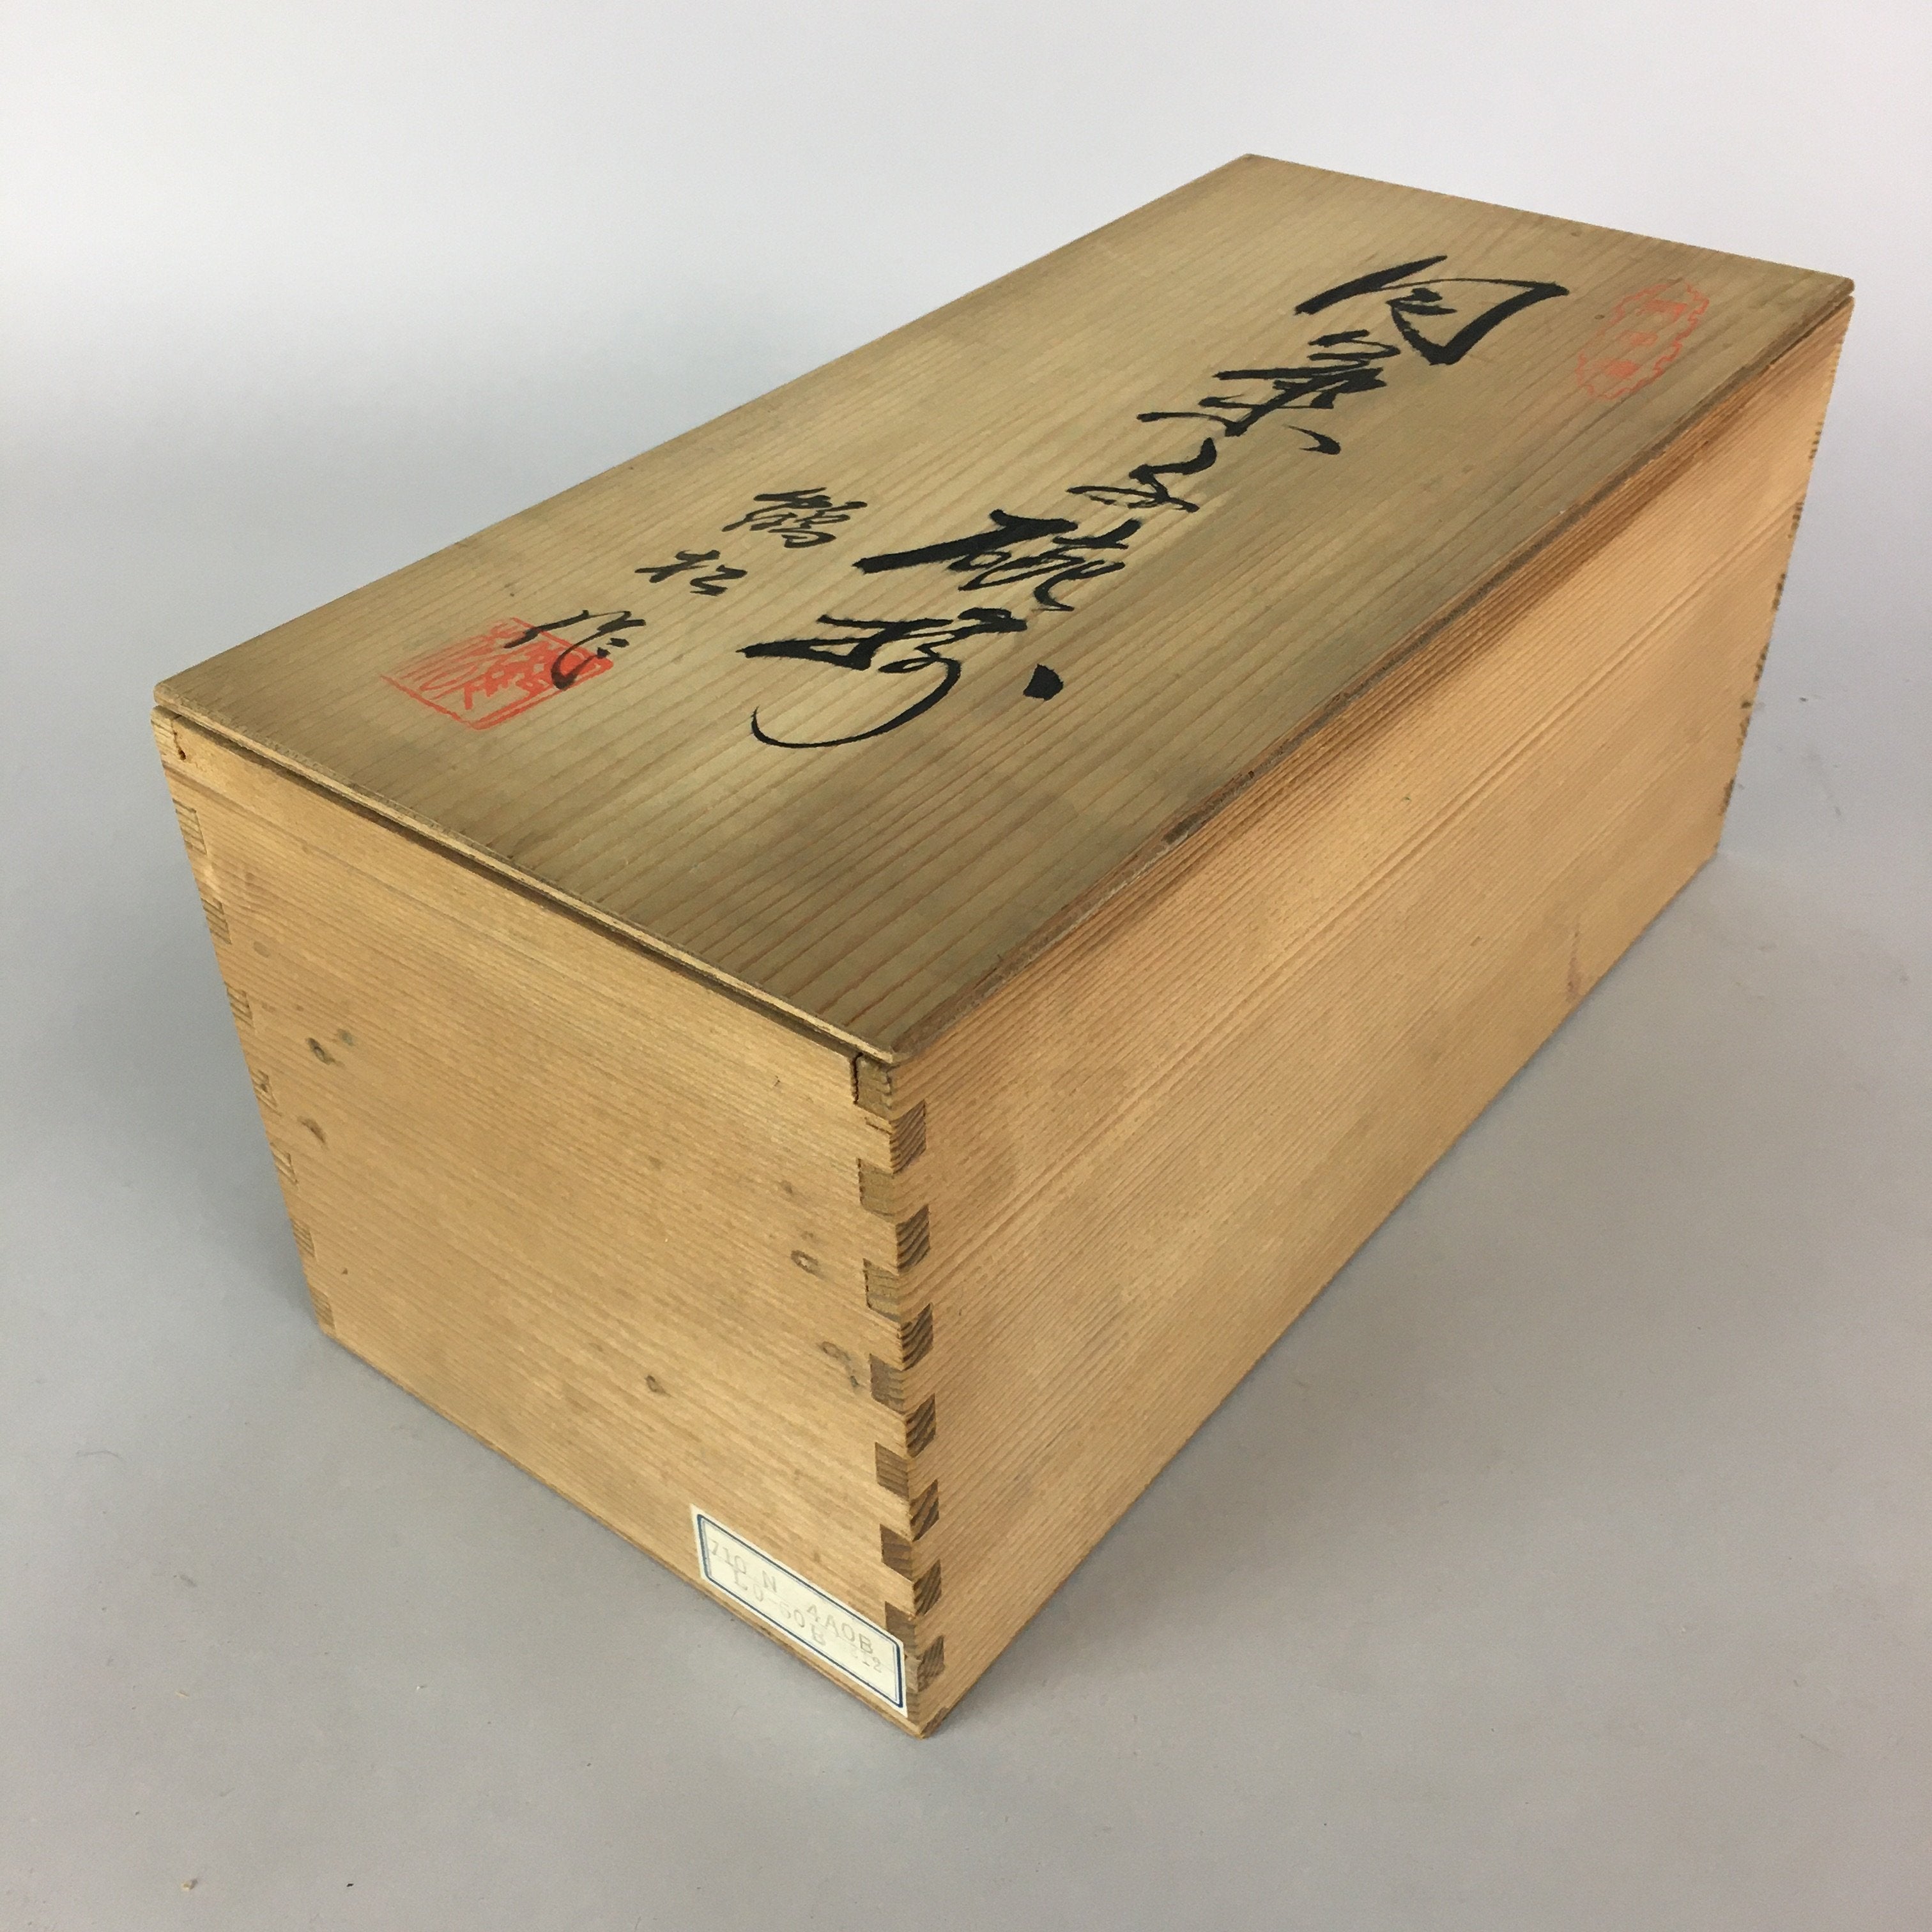 Japanese Wooden Storage Box Pottery Vtg Hako Inside 29.9x13.3x13.3cm WB779